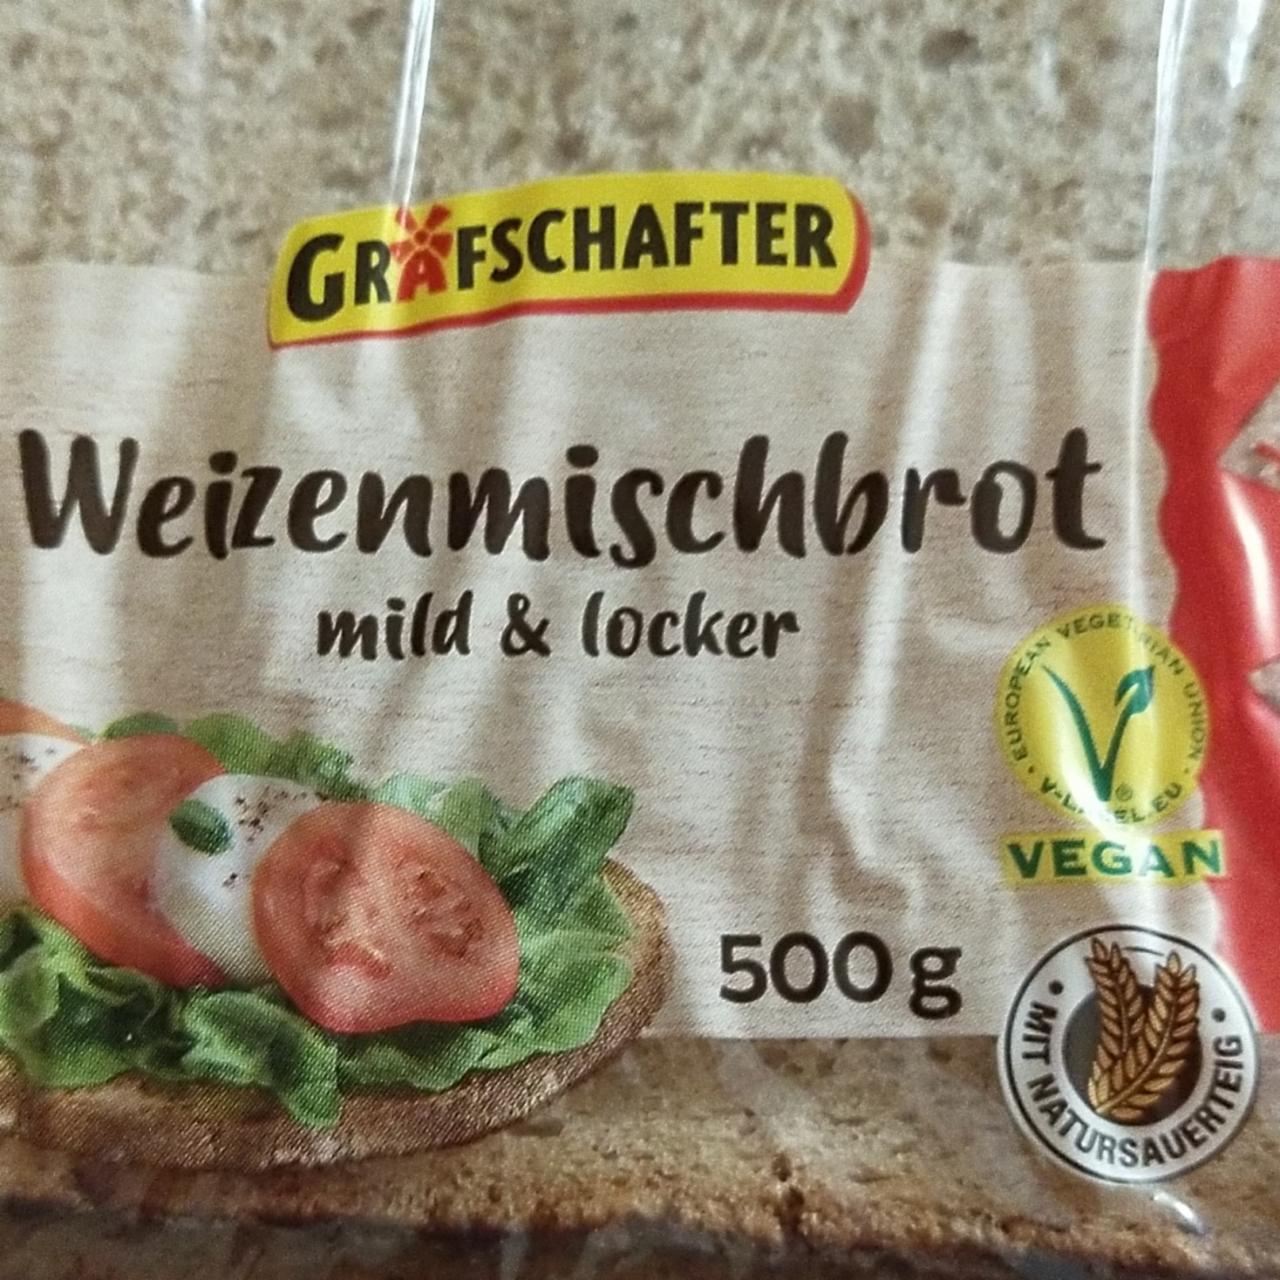 Фото - Weizenmischbrot mild & locker Lieken Grafschafter